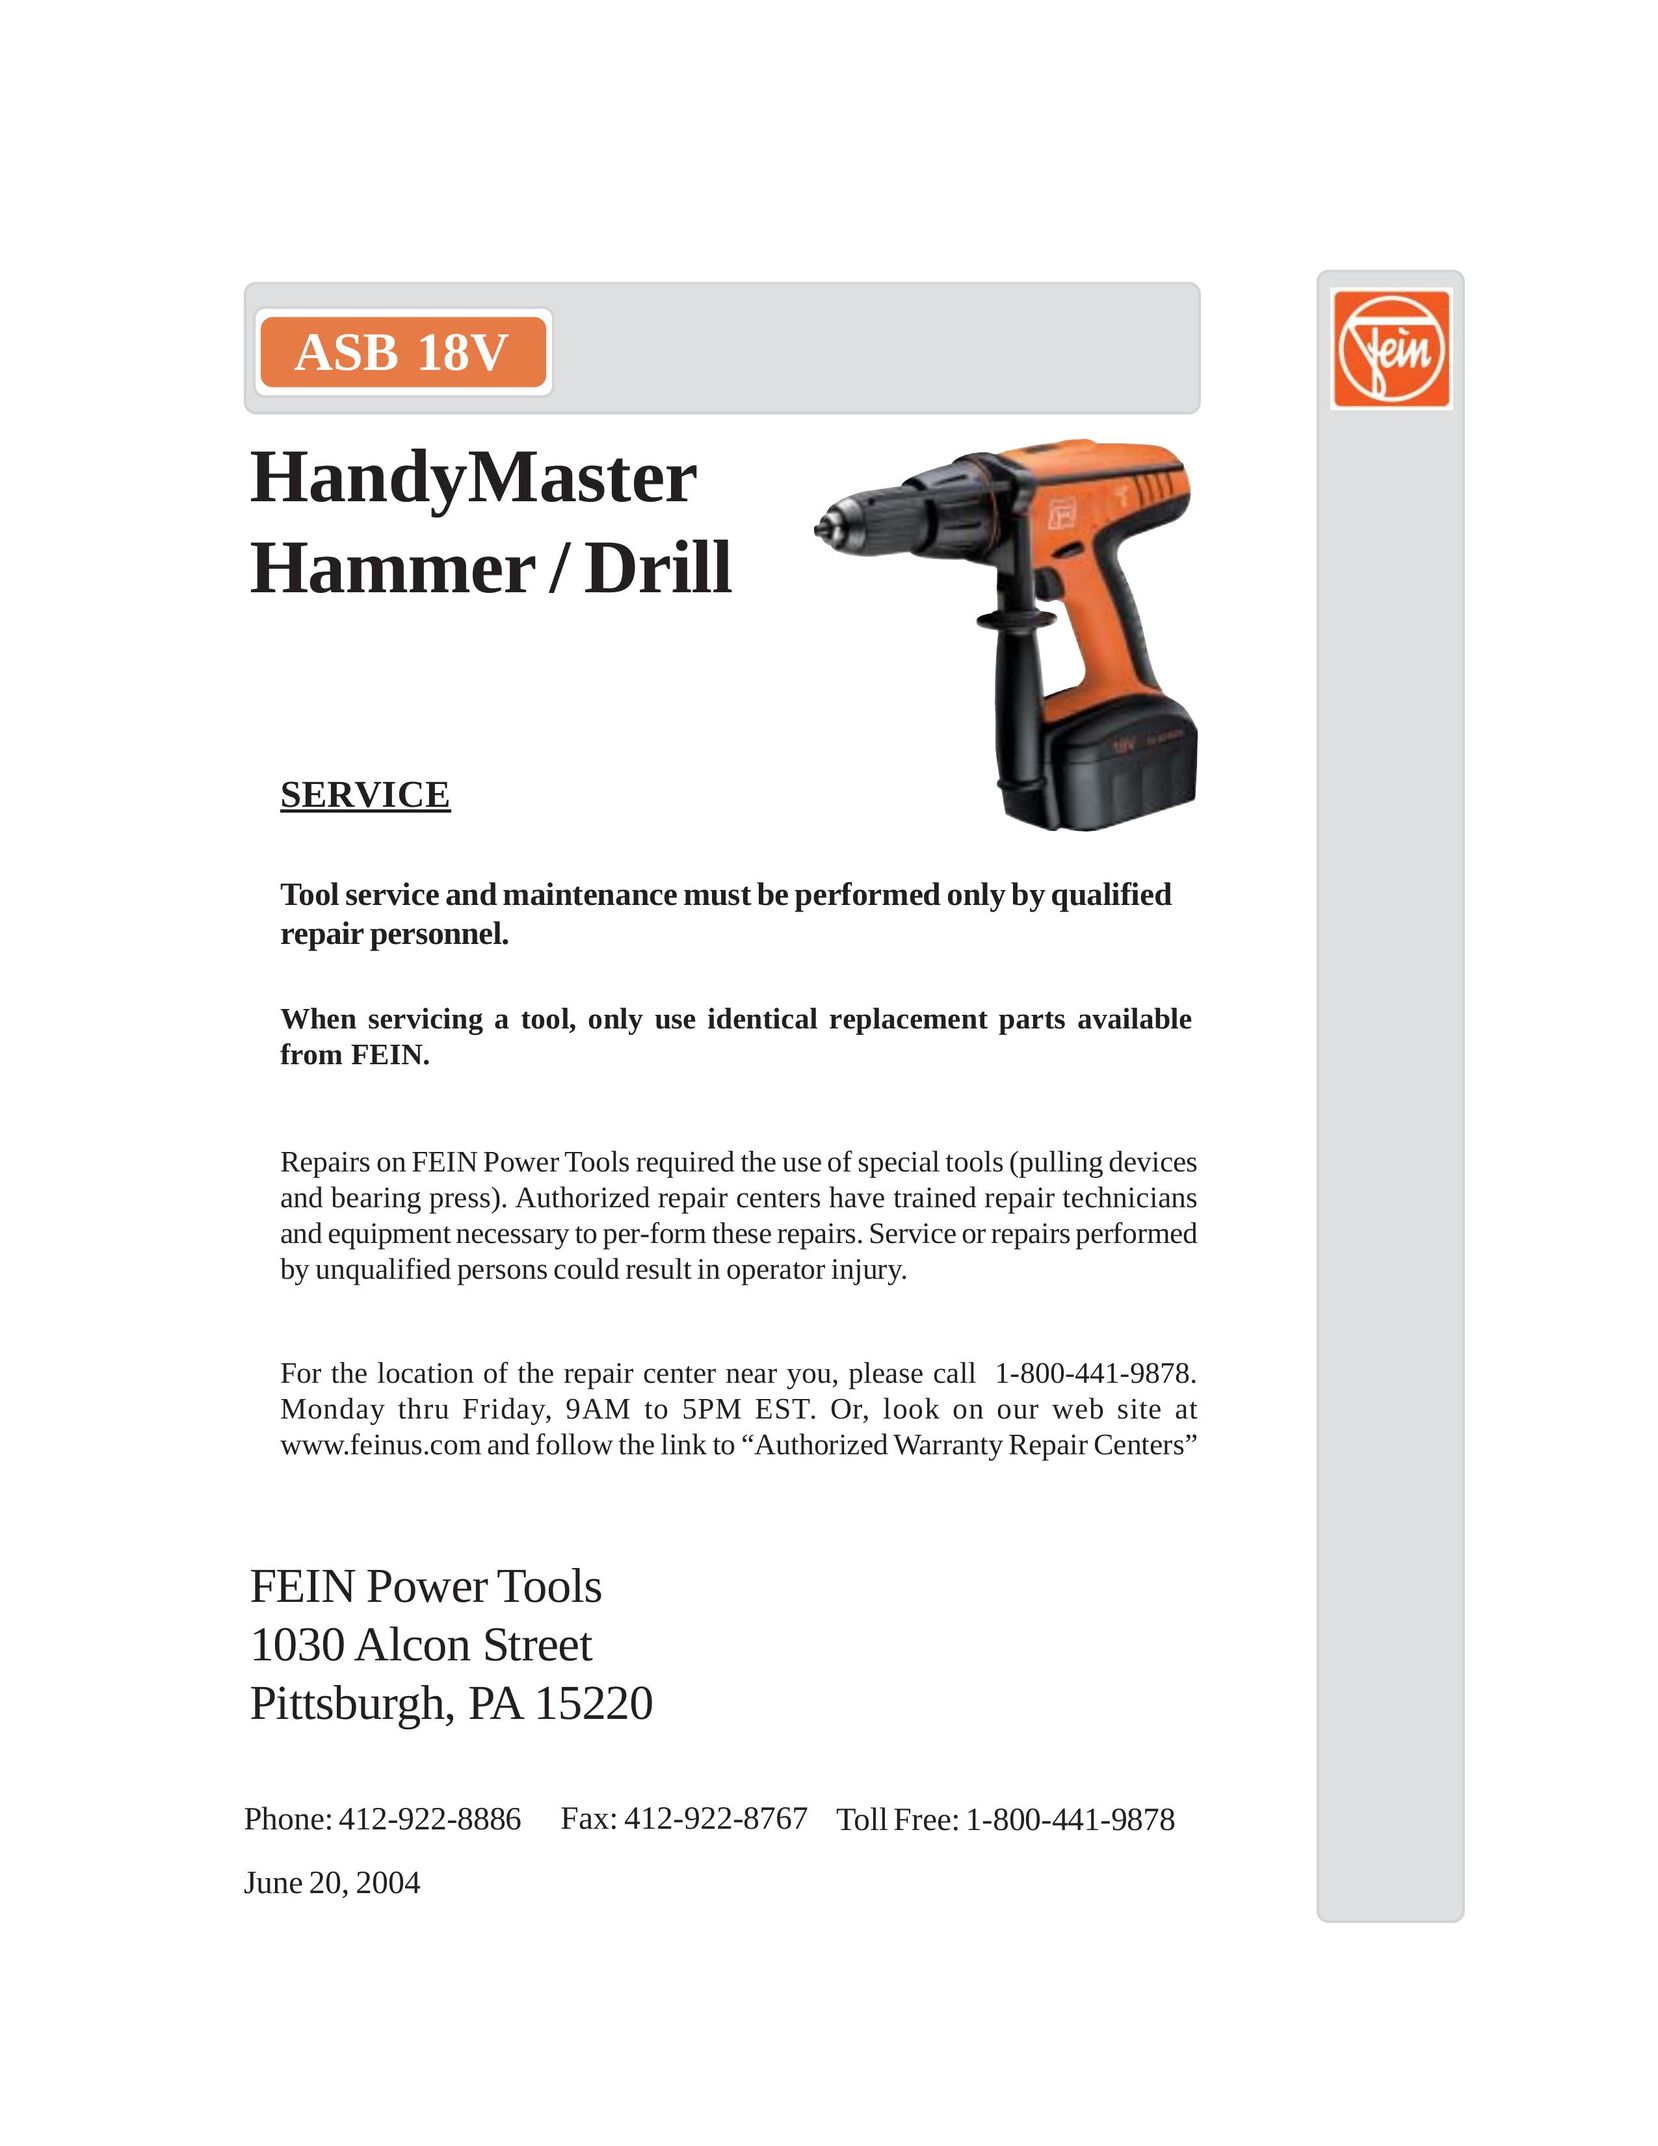 FEIN Power Tools ASB 18V Drill User Manual